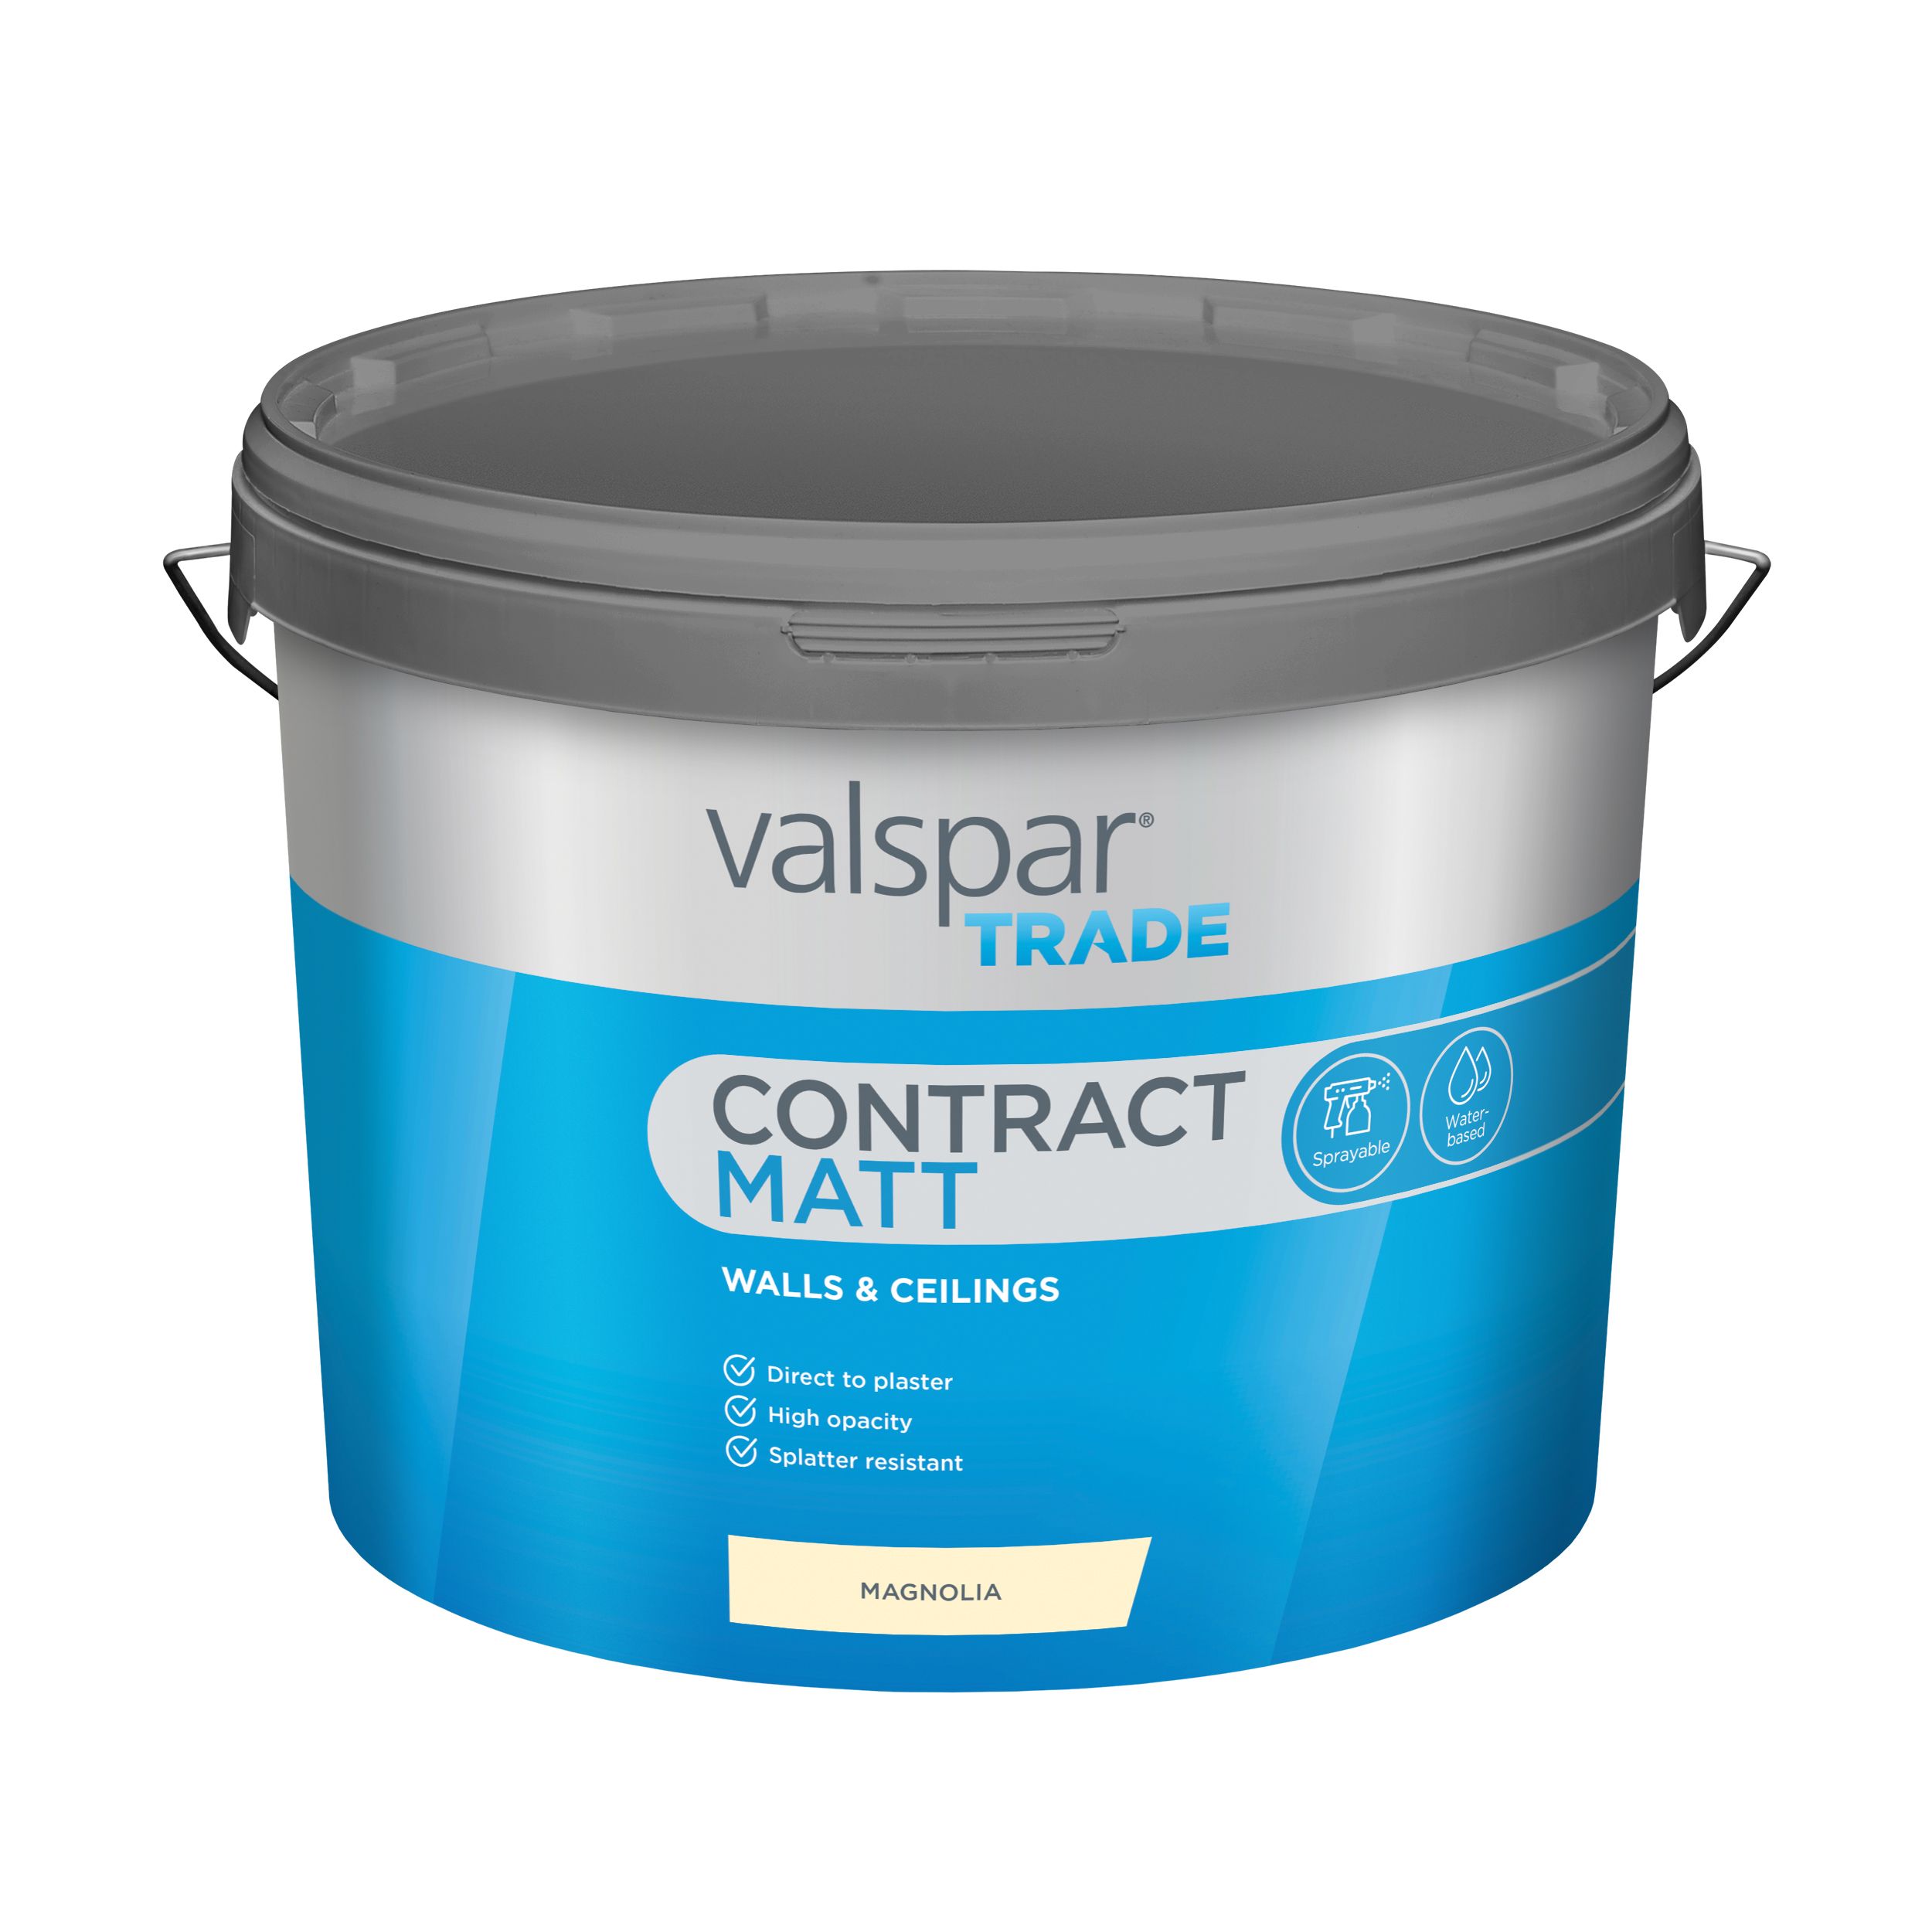 Valspar Trade Contract Magnolia Contract matt Emulsion paint, 10L